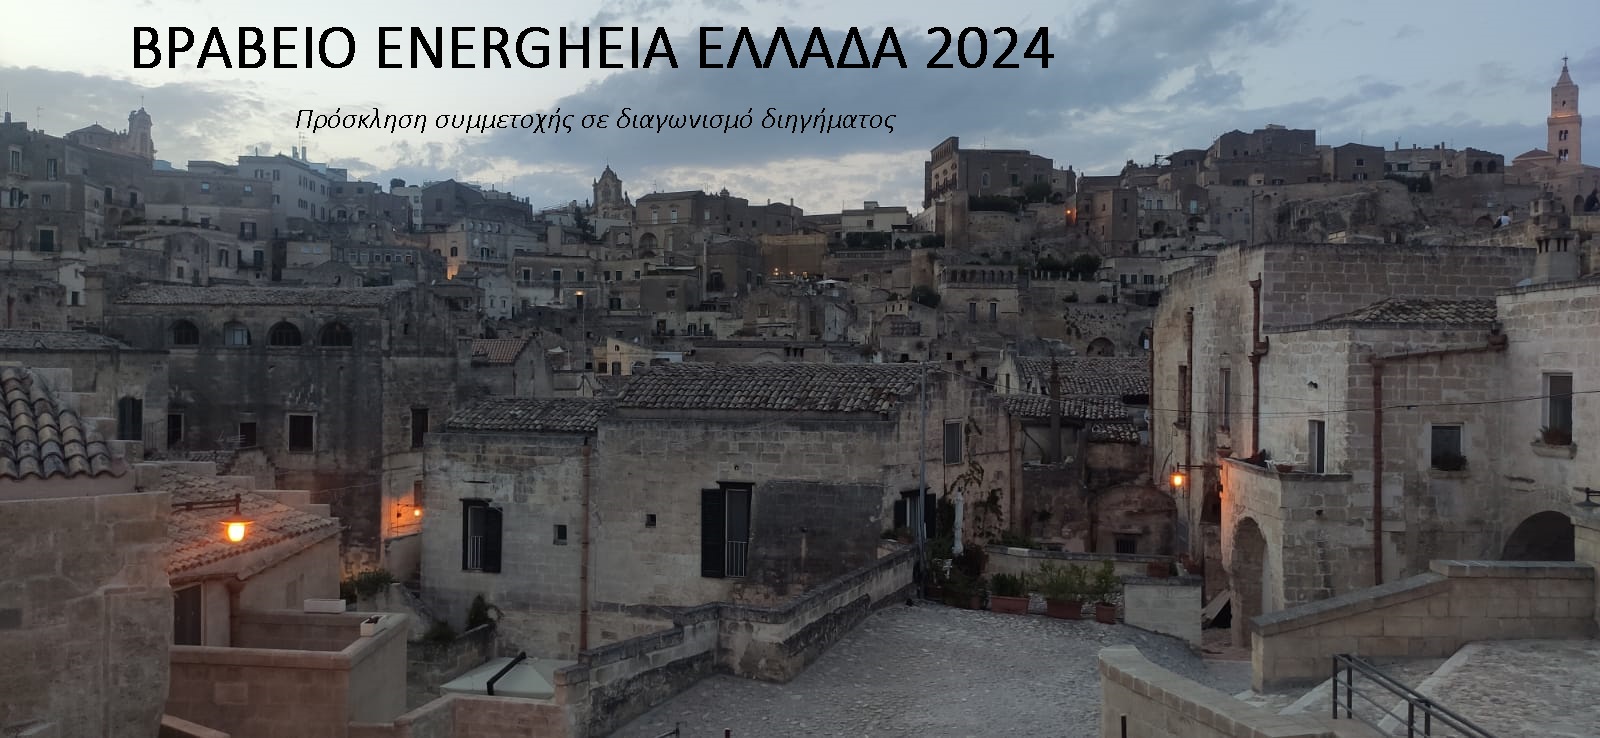 ΒΡΑΒΕΙΟ ENERGHEIA ΕΛΛΑΔΑ 2024